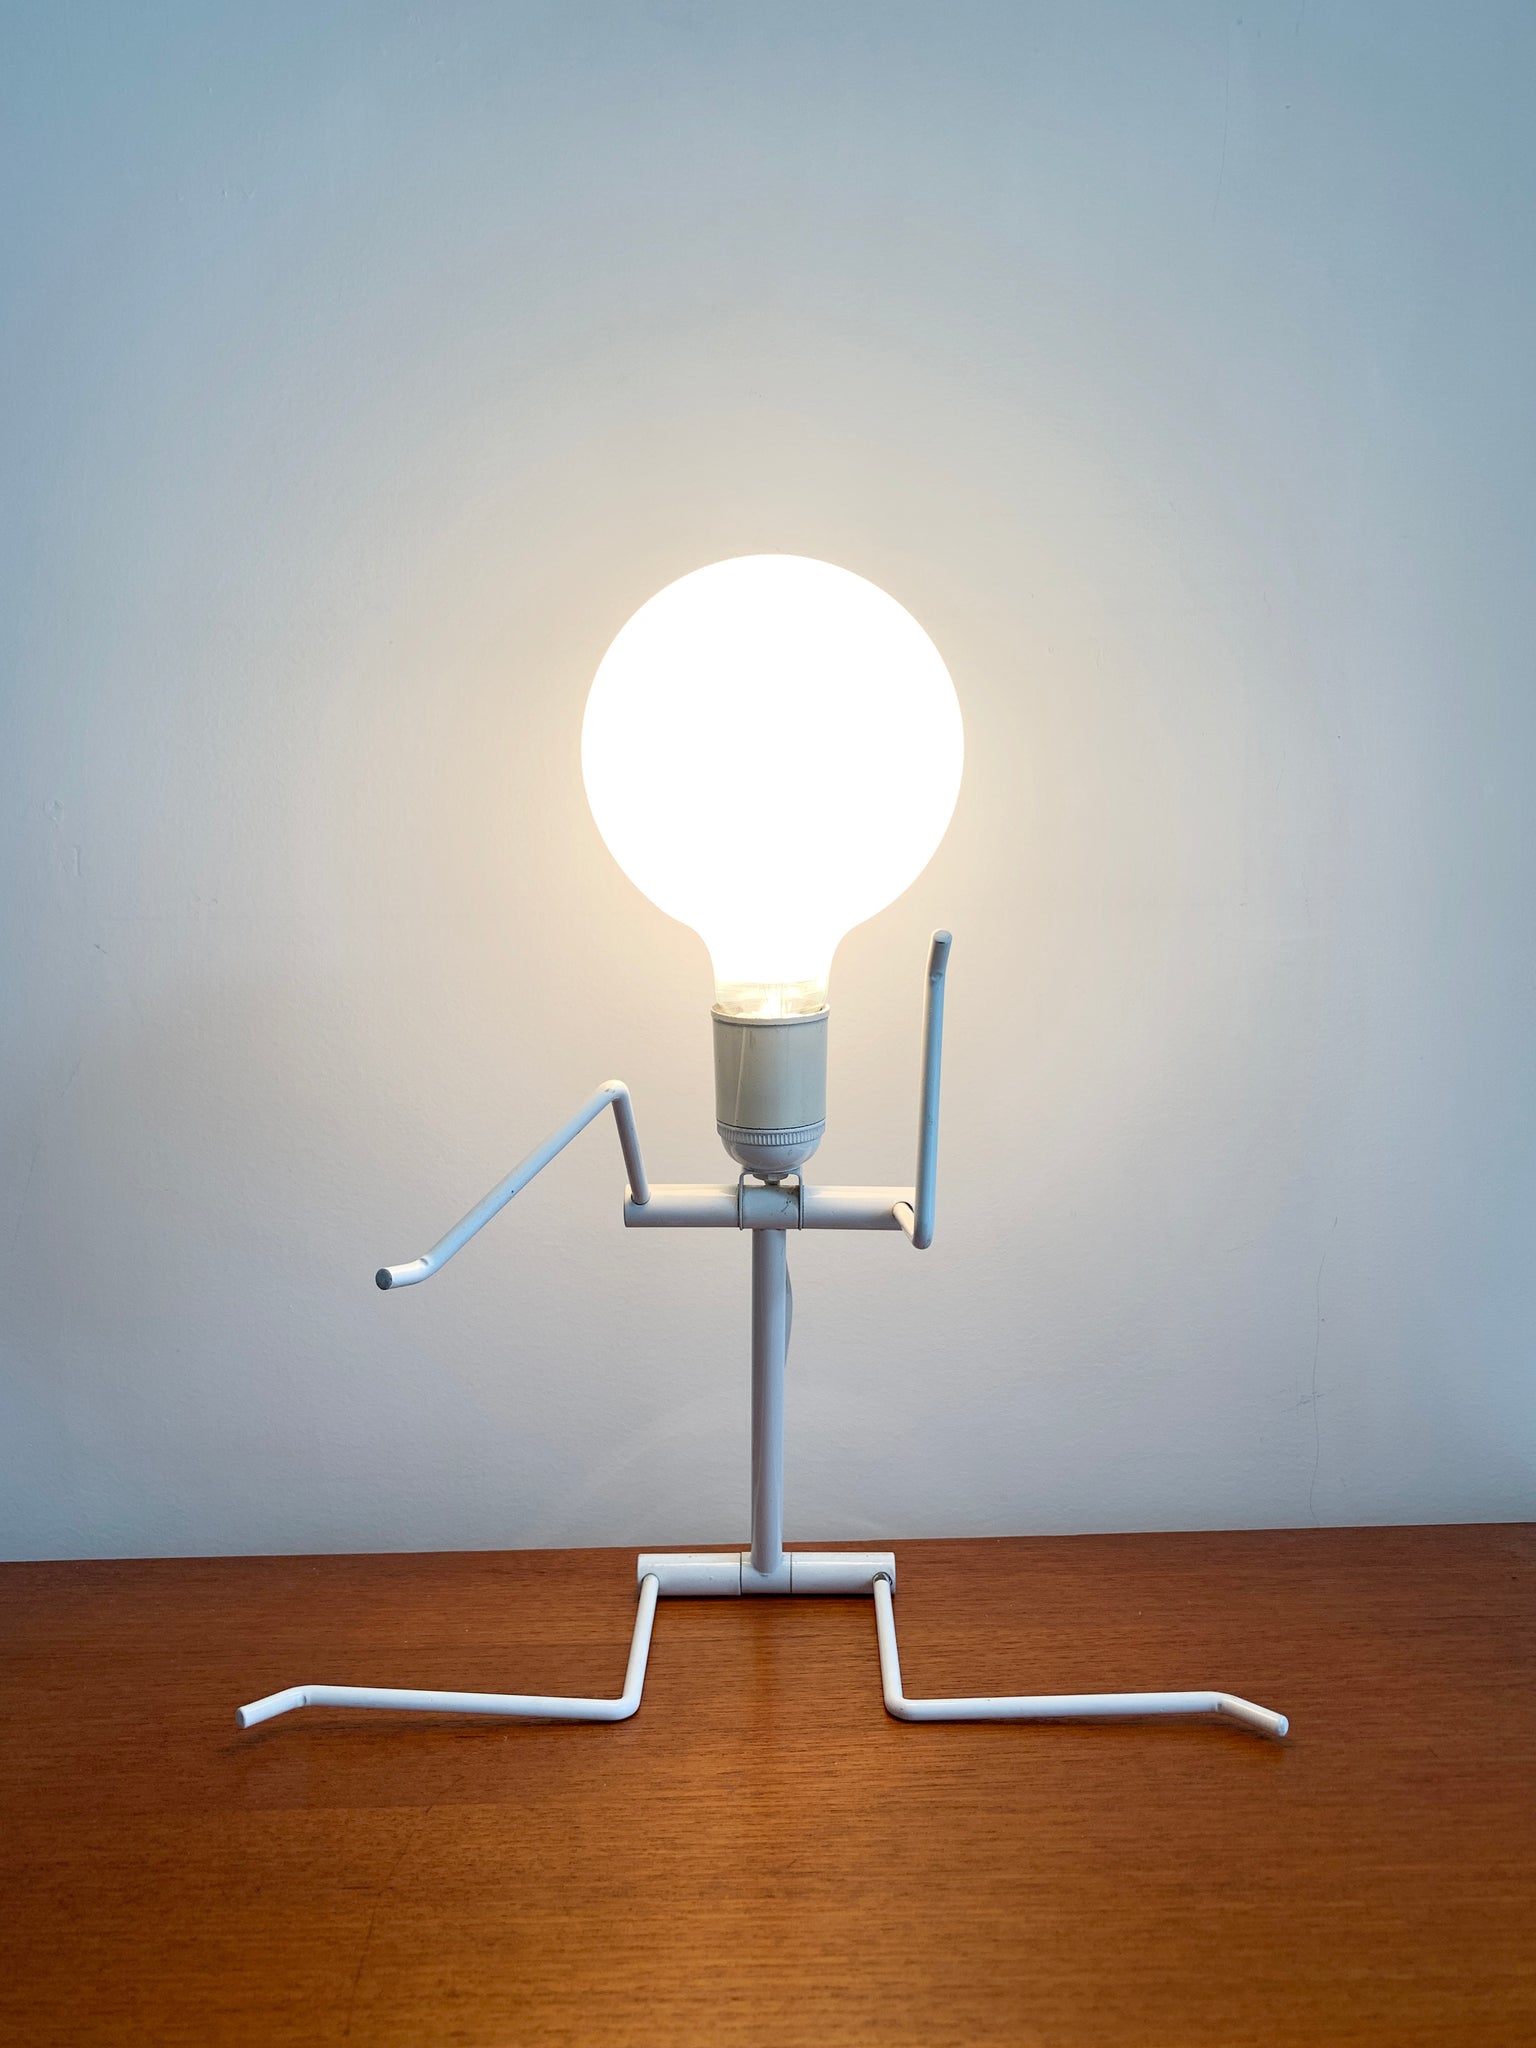 Vintage White Metal Bendy Person Lamp